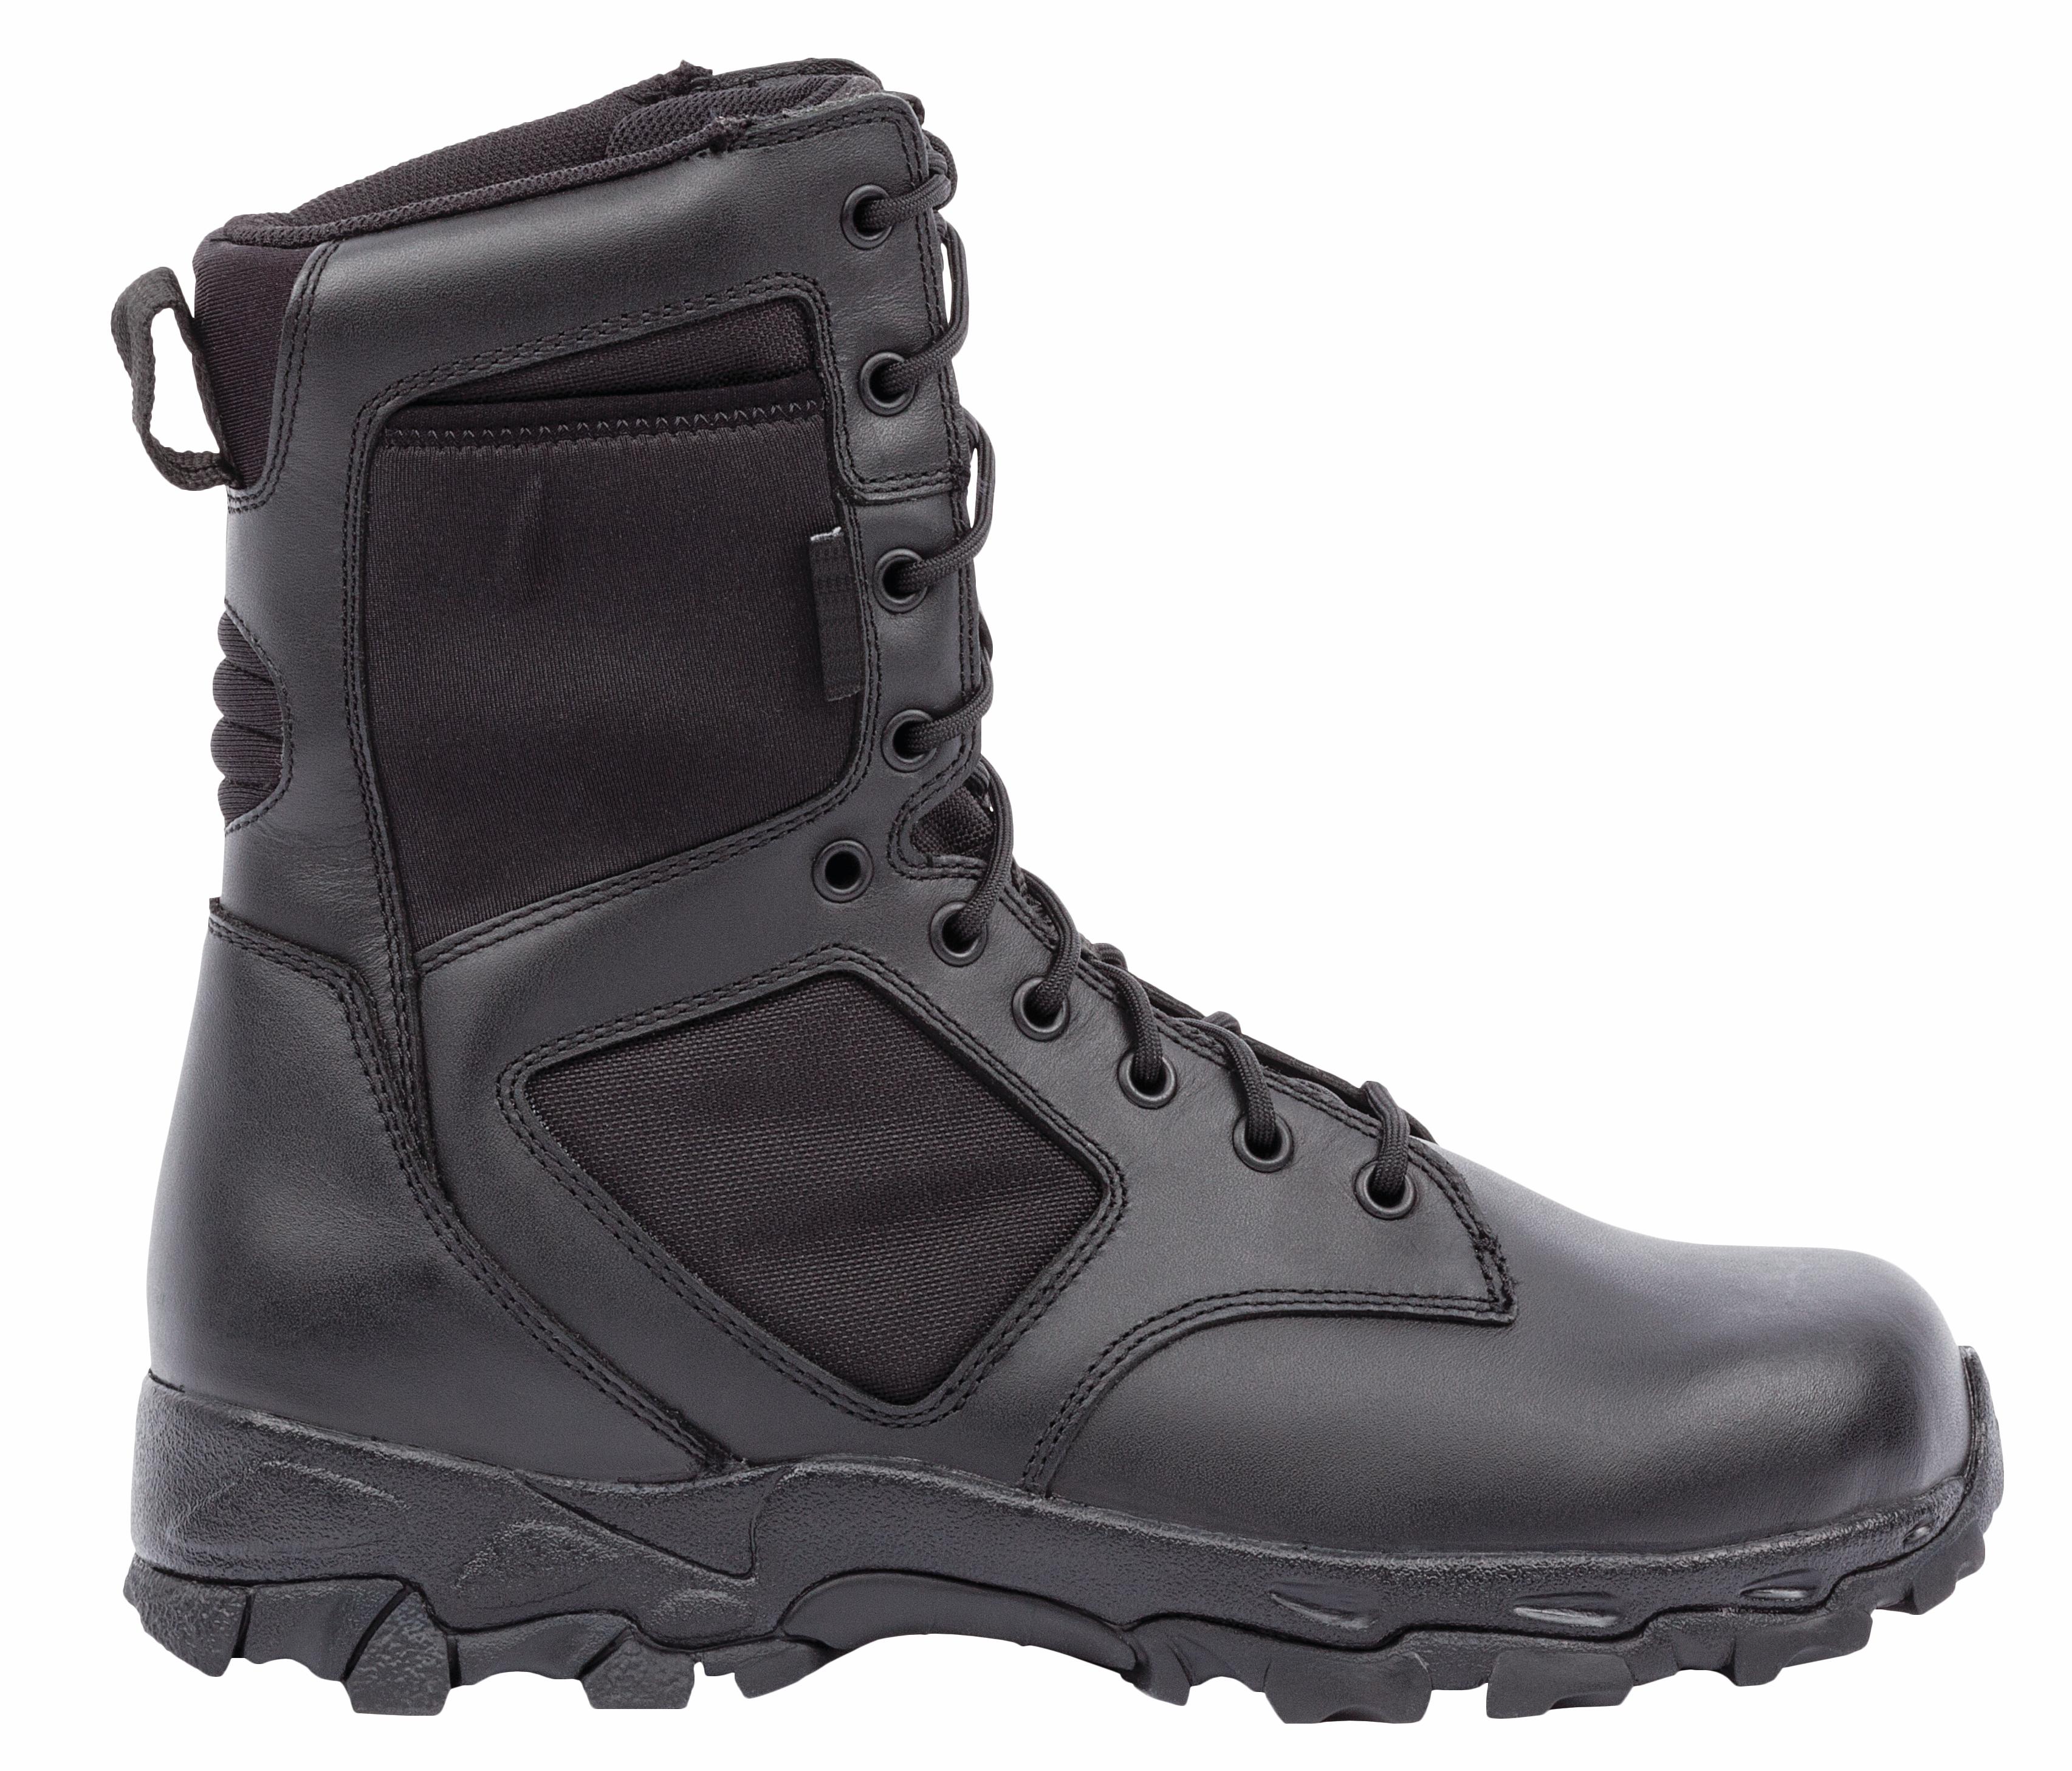 Blackhawk Tactical Boots